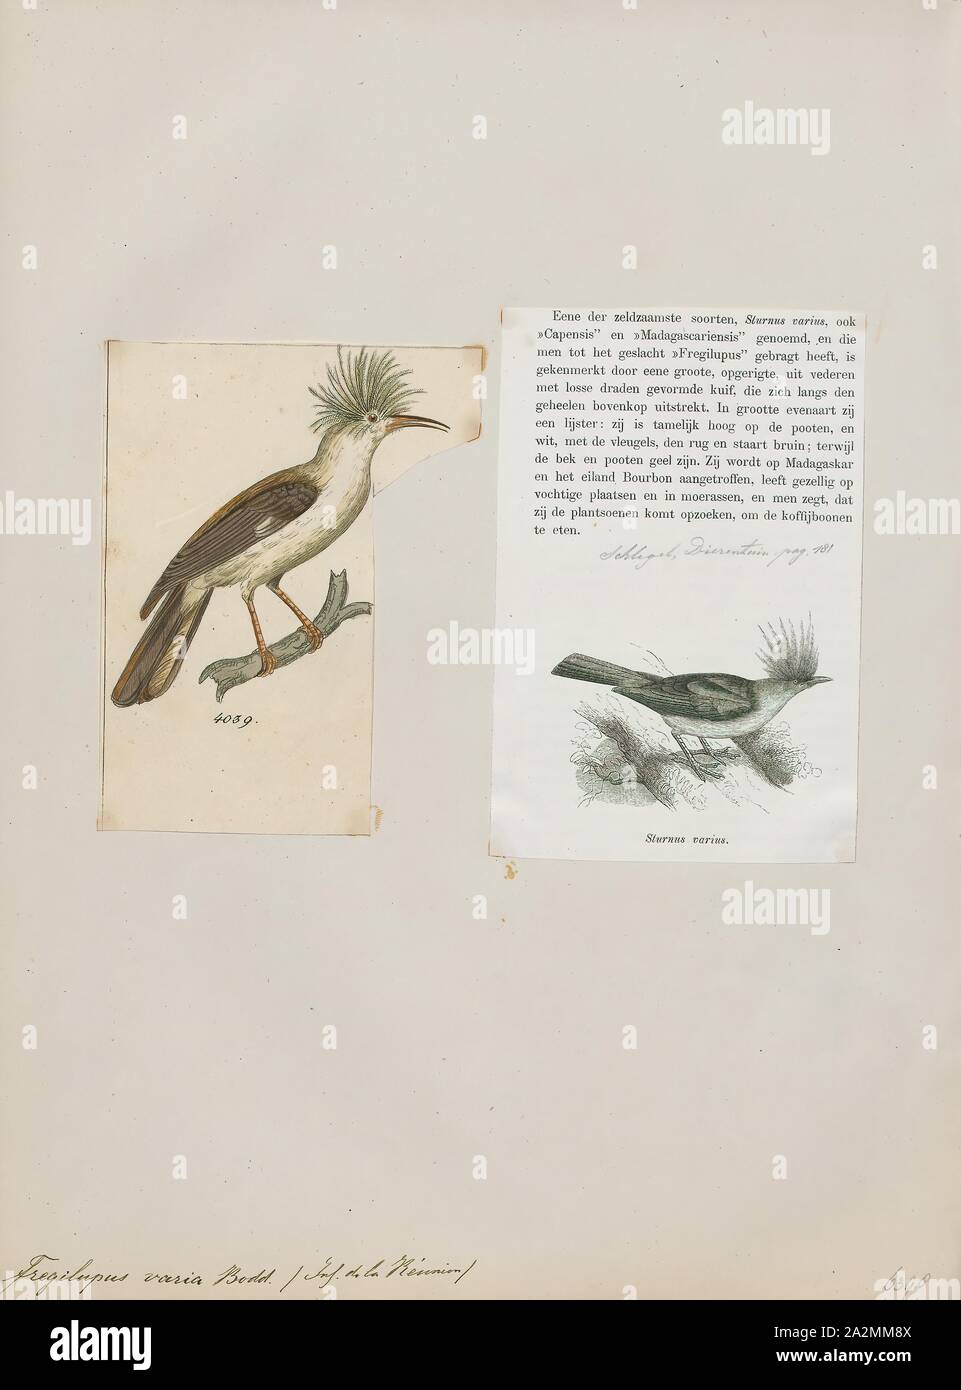 Fregilupus Varia, Drucken, der wiedehopf Starling (Fregilupus varius), auch bekannt als die Insel Réunion starling oder Hopfstar, ist eine Pflanzenart aus der Gattung der starling, die auf den Maskarenen Insel Réunion lebten und starben in den 1850er Jahren. Seine nächsten Verwandten waren die Rodrigues starling und die Mauritius starling von nahe gelegenen Inseln, und die drei offenbar in Südostasien entstanden. Der Vogel wurde zum ersten Mal im 17 Jahrhundert erwähnt und war lange Zeit im Zusammenhang mit dem wiedehopf, aus denen der Name abgeleitet ist. Obwohl eine Reihe von affinitäten vorgeschlagen wurden, wurde bestätigt als Stockfoto